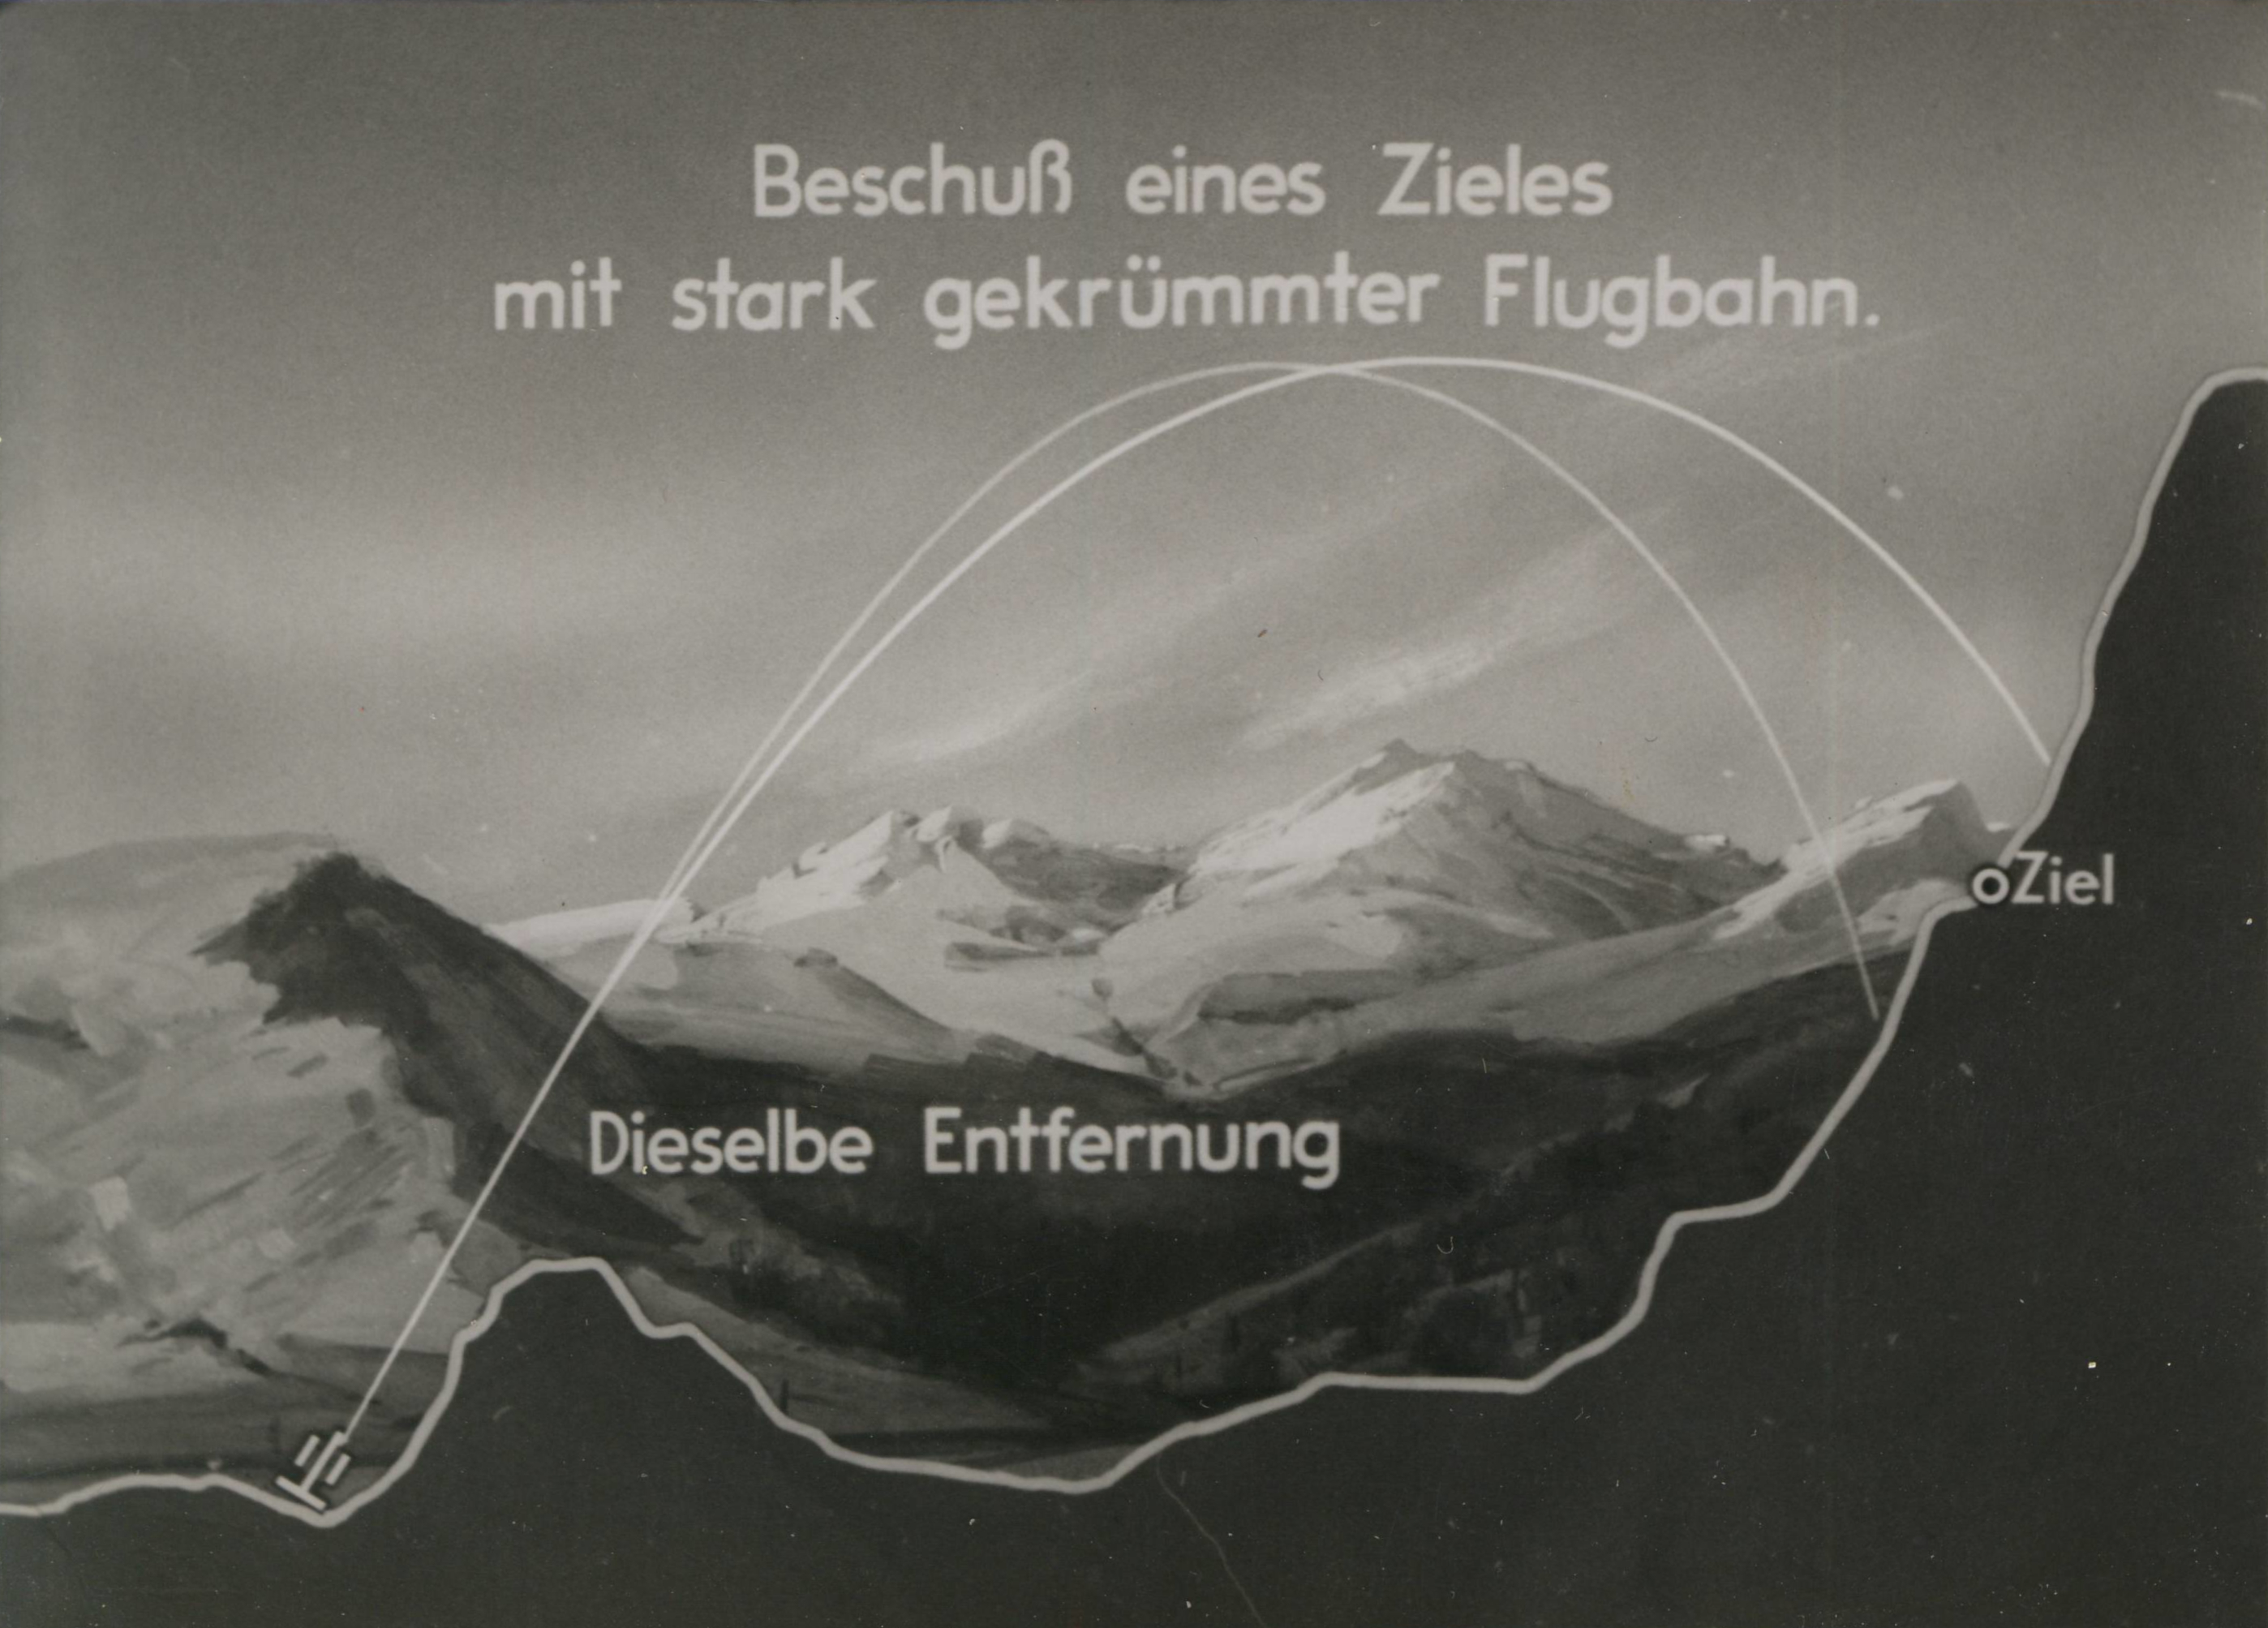 Einzelbild aus einem militärischen Lehrfilm zur Schießausbildung, Darstellung der Ballistik von Geschossen. ©DIAF/Sammlung J. P. Storm